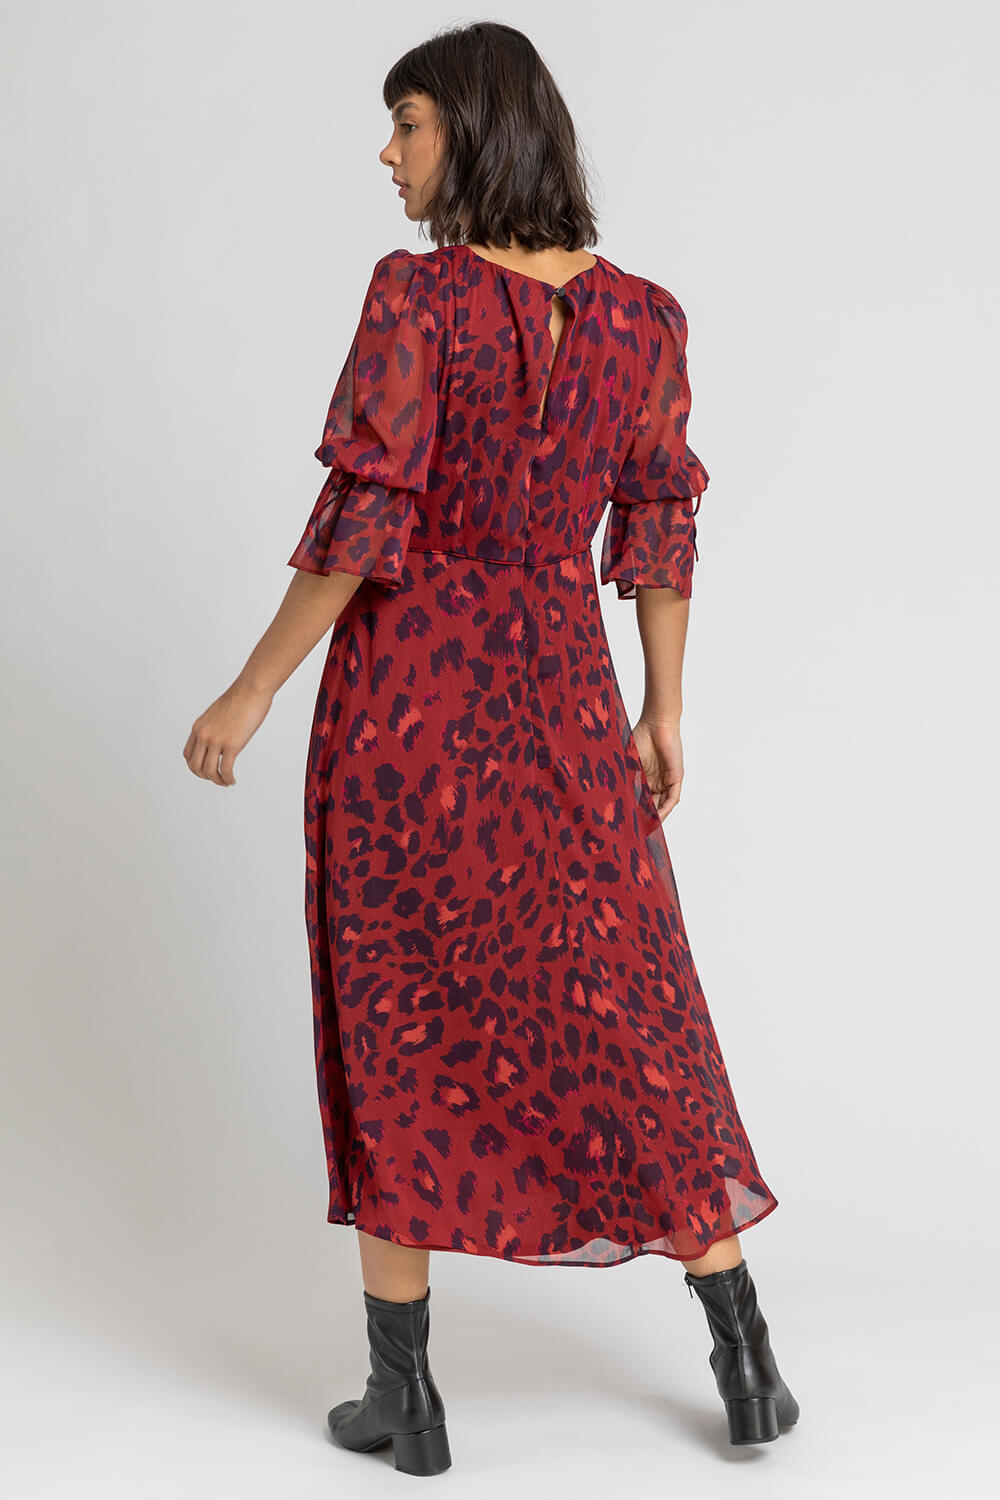 Rust Leopard Print Chiffon Maxi Dress, Image 2 of 5